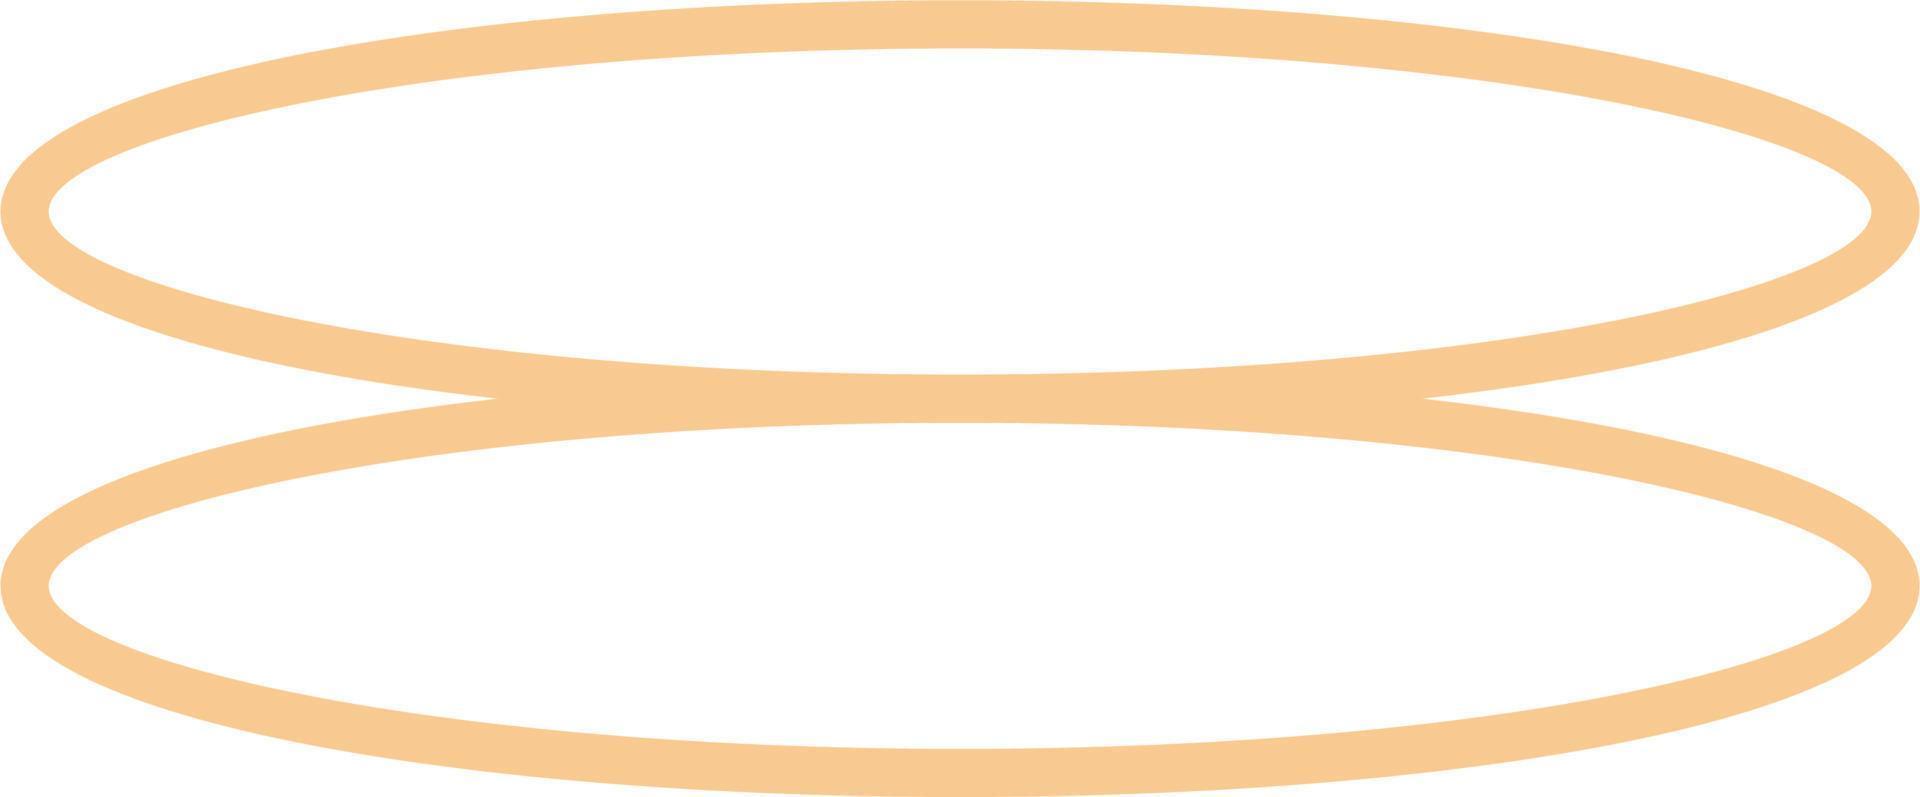 minimal oval översikt design vektor